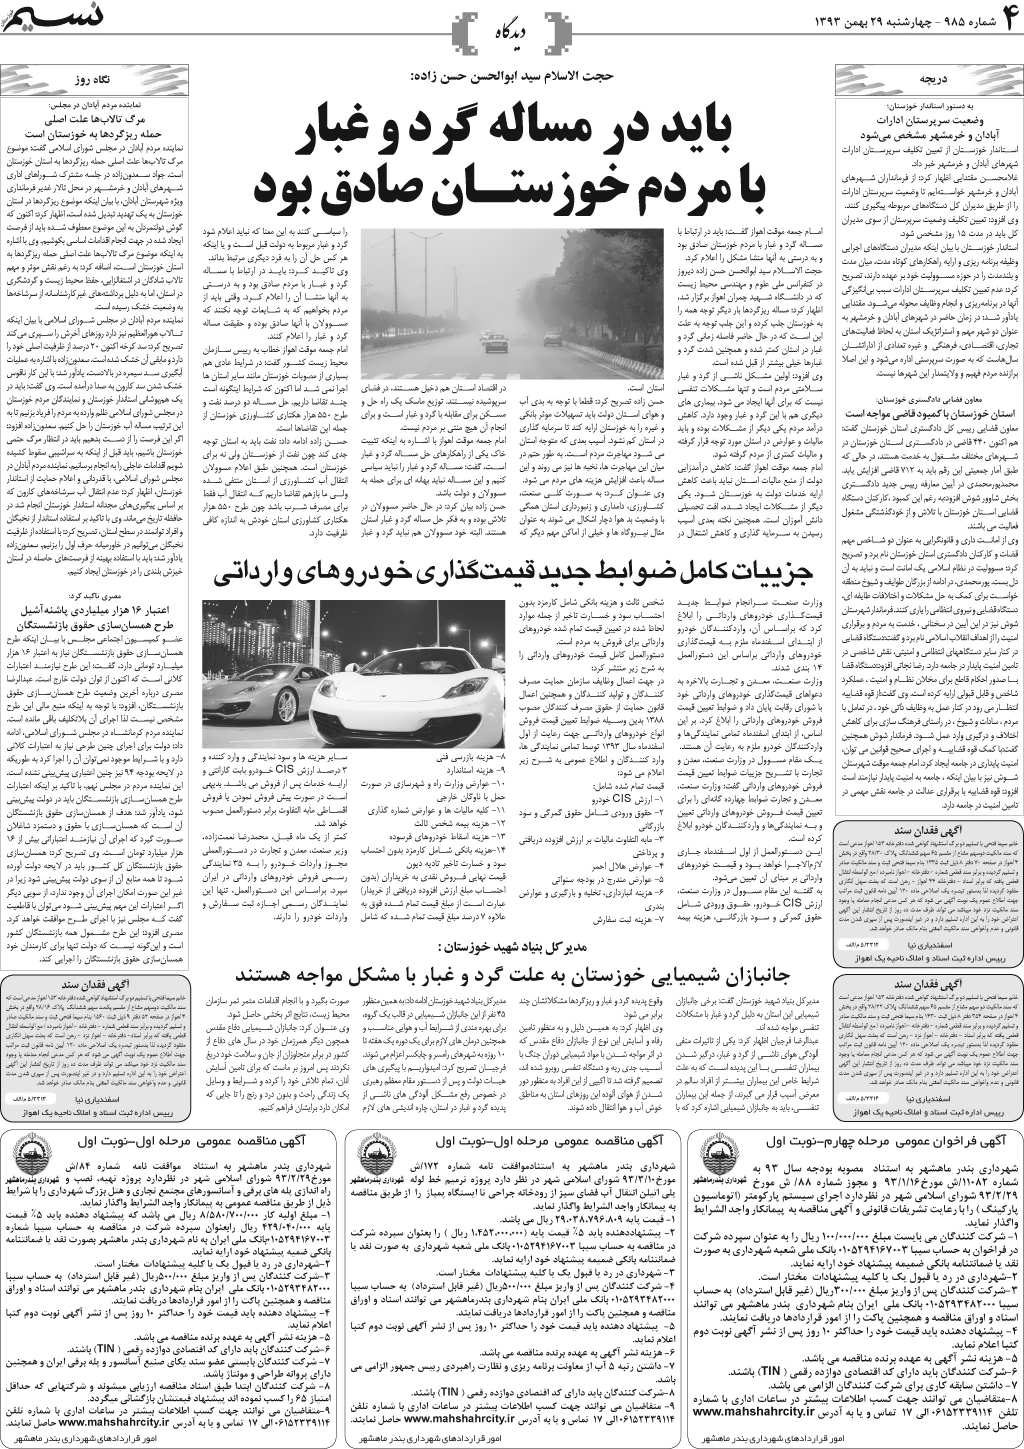 صفحه دیدگاه روزنامه نسیم شماره 985